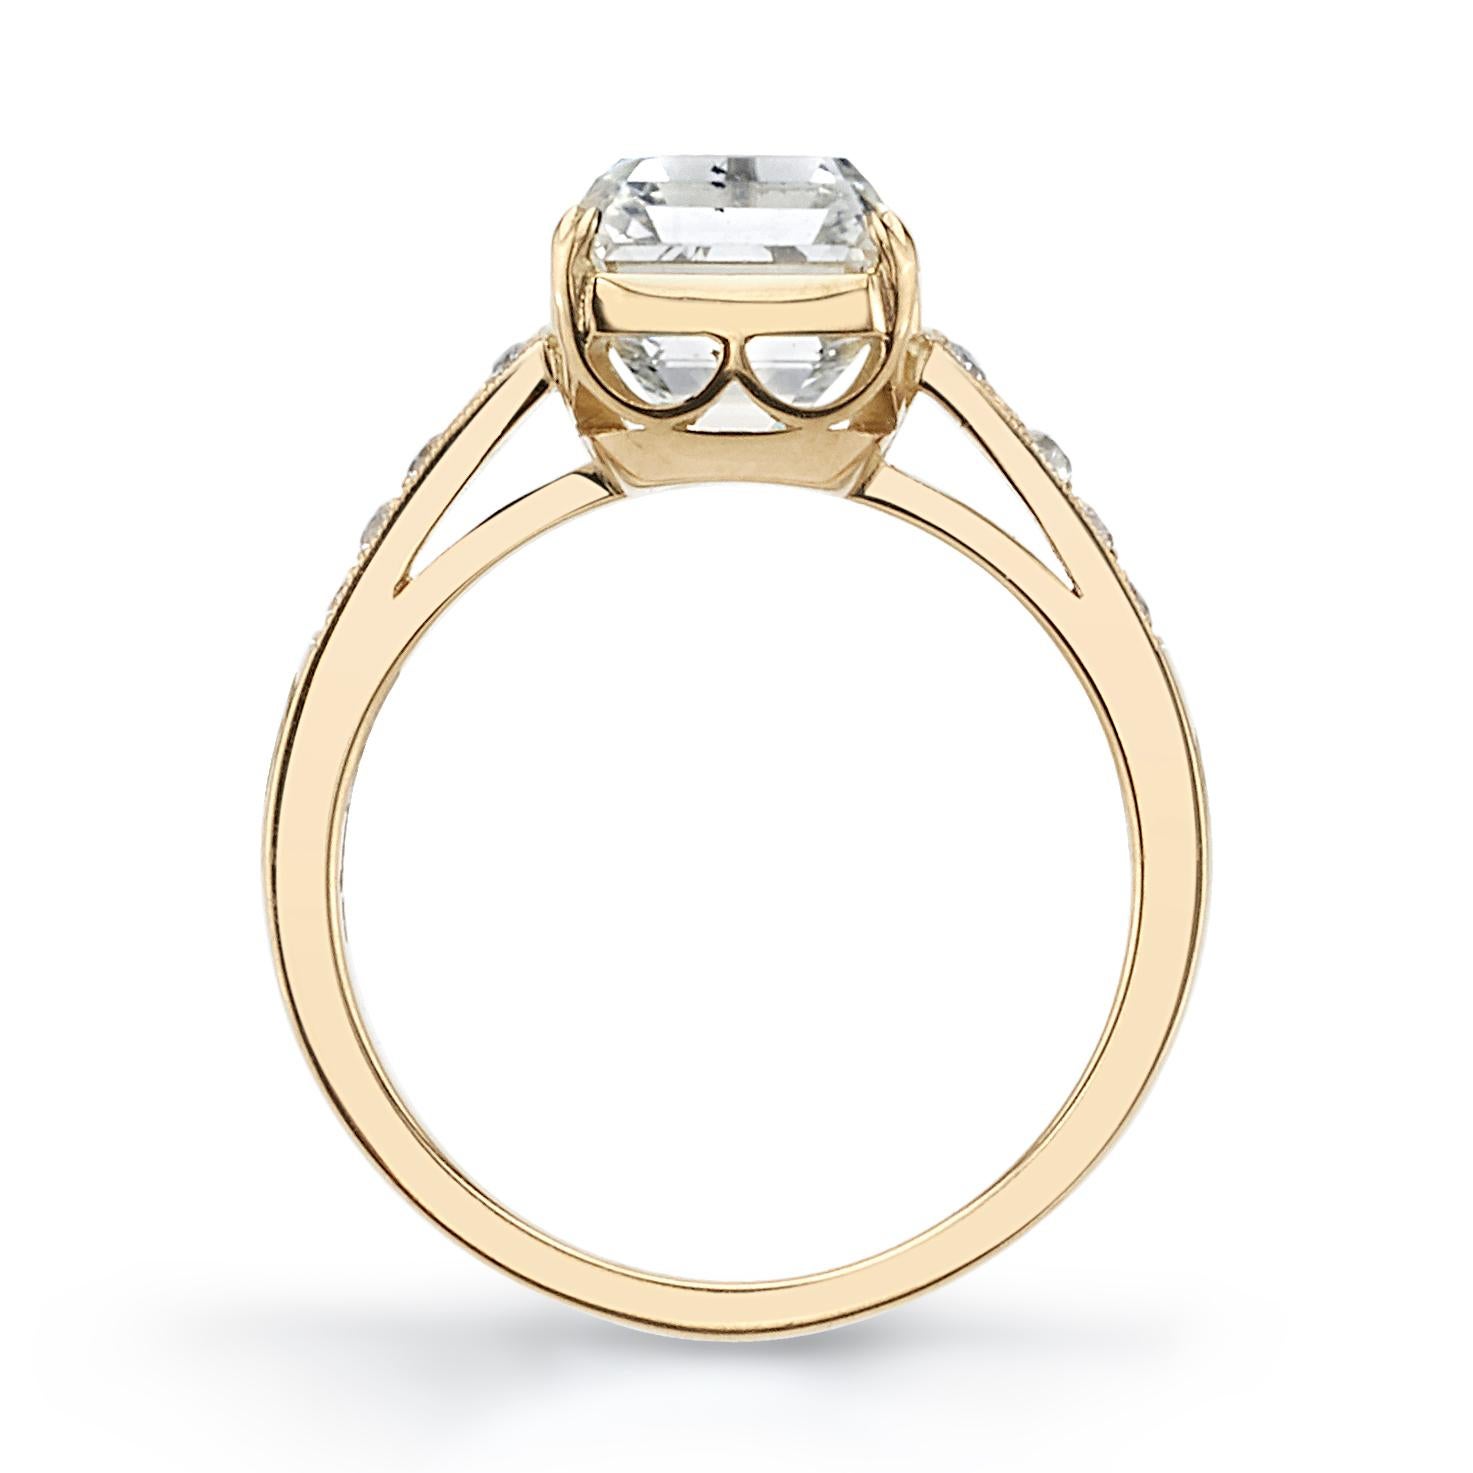 Emerald Cut 4.39 Carat GIA Certified Cushion Cut Diamond Set in an 18 Karat Yellow Gold Ring